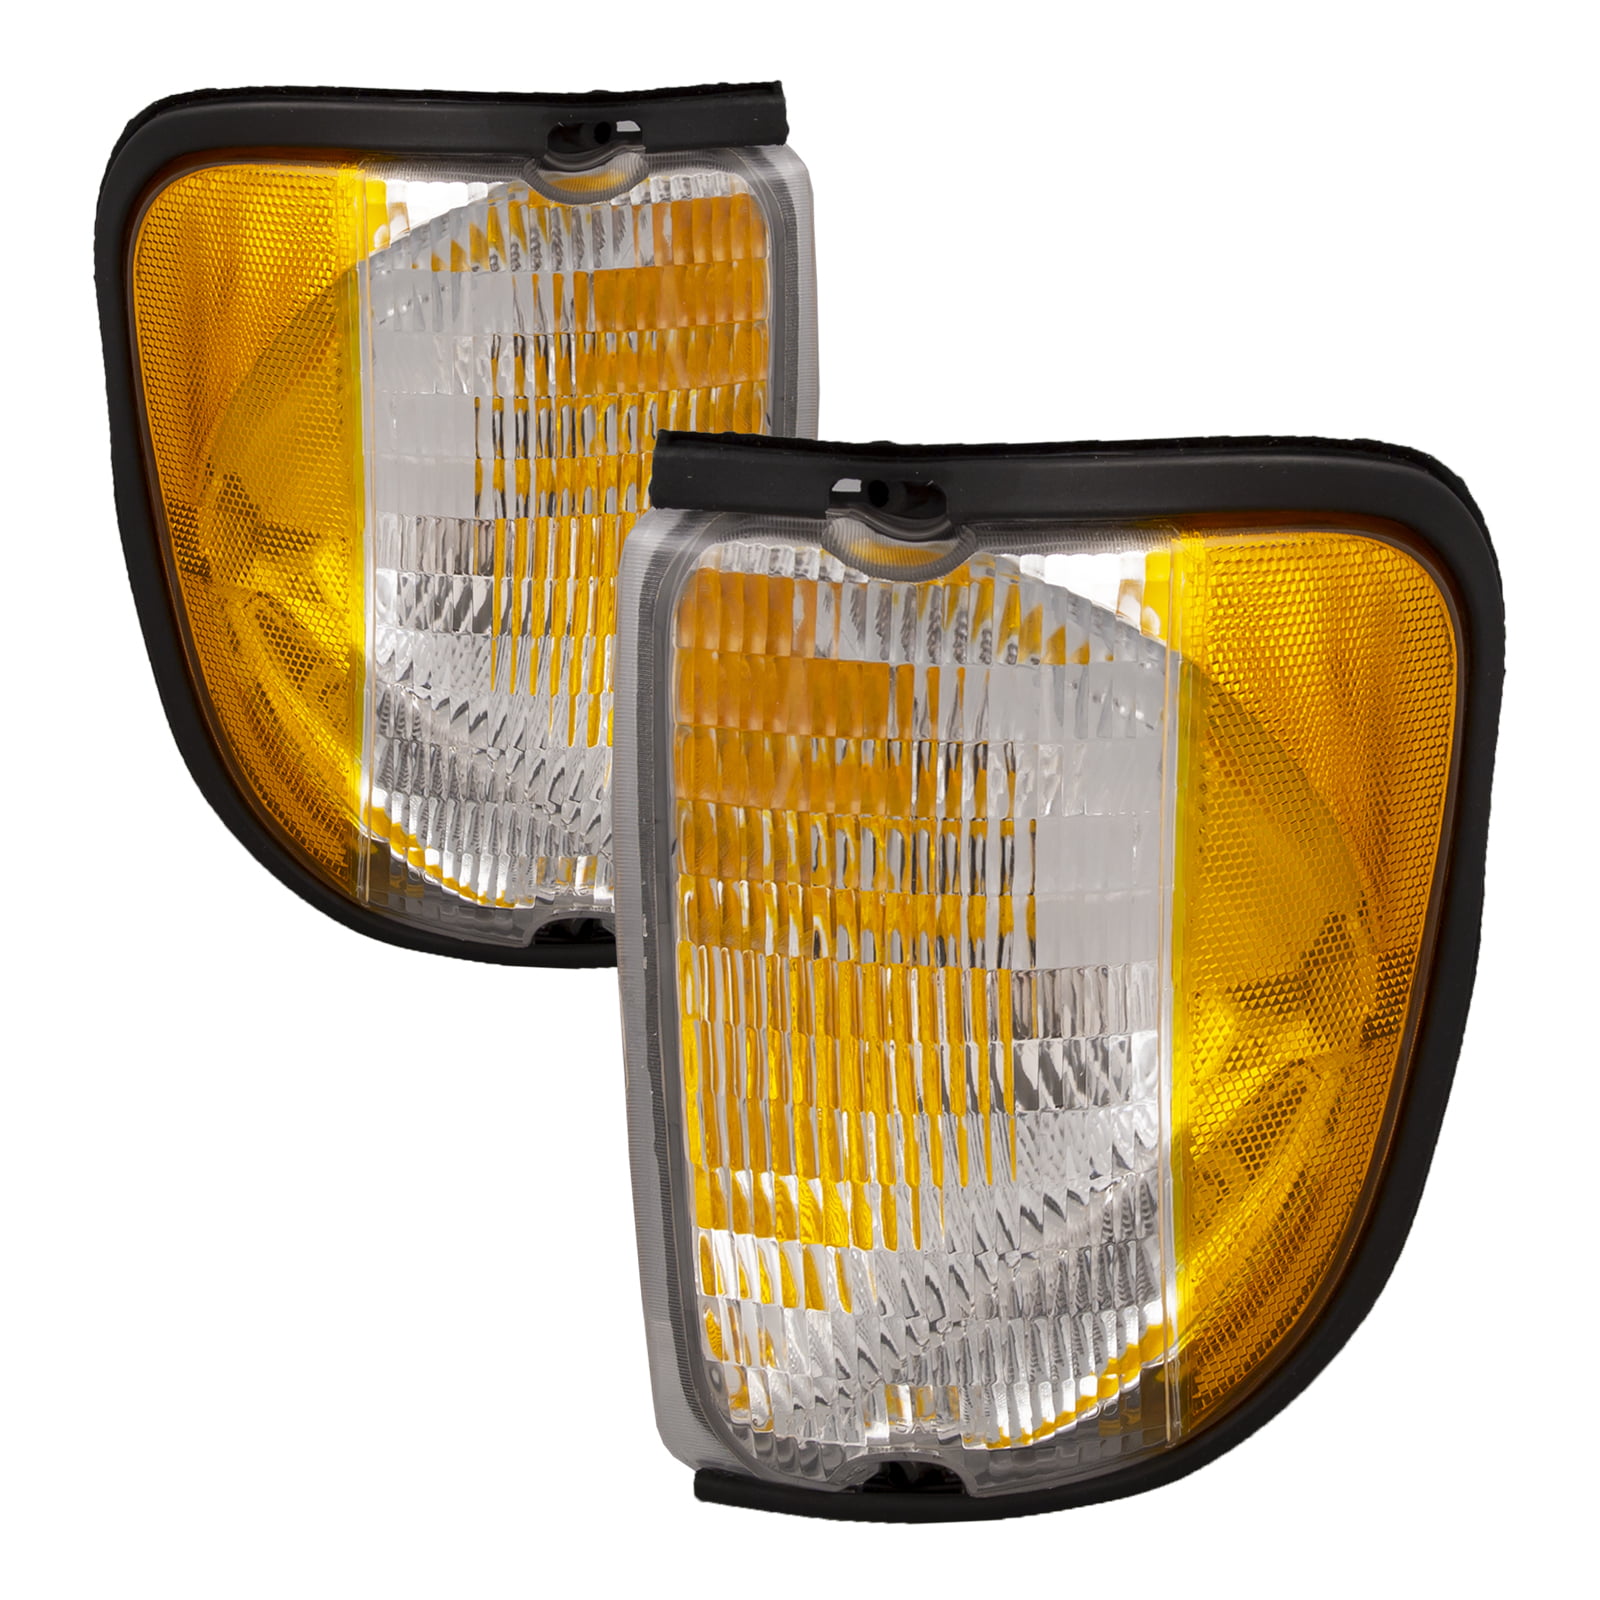 HEADLIGHTSDEPOT Signal Light Compatible with Ford Club Wagon E-150 Econoline E-250 E-350 Super Duty E-450 E-550 Su Includes Left Driver Side Signal Light 